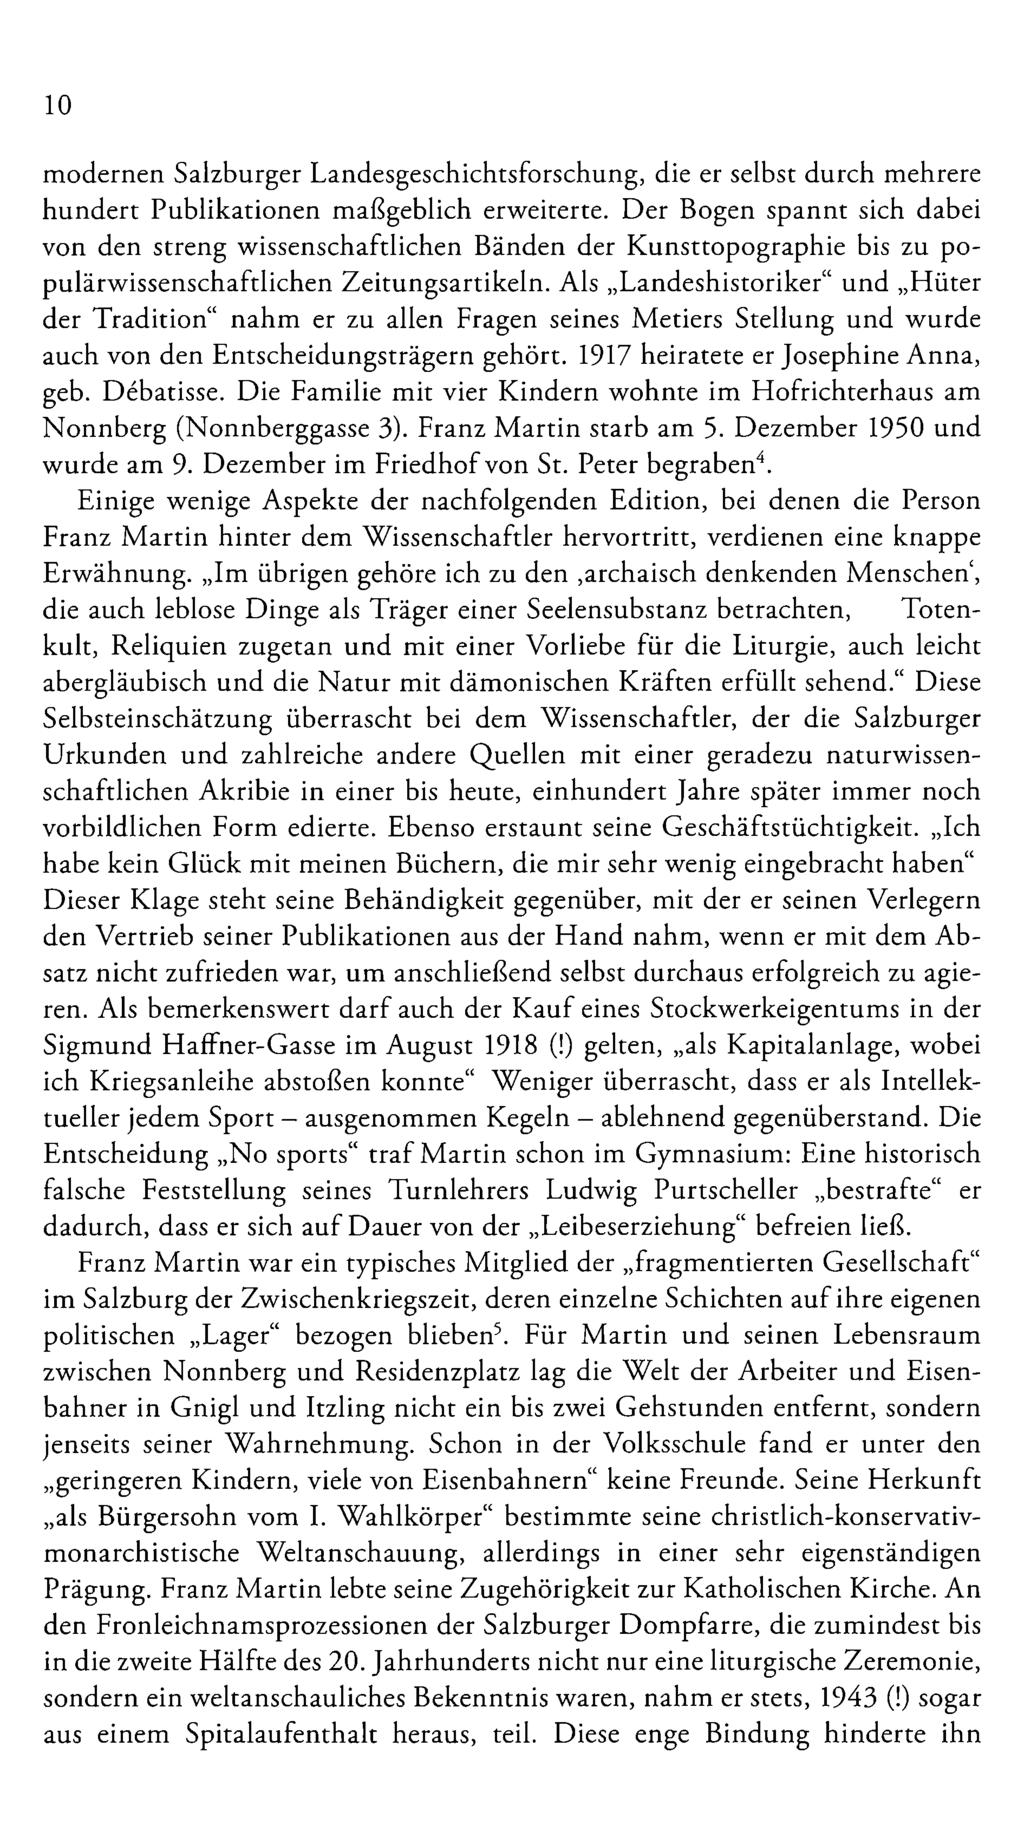 10 modernen Salzburger Landesgeschichtsforschung, die er selbst durch mehrere hundert Publikationen maßgeblich erweiterte.